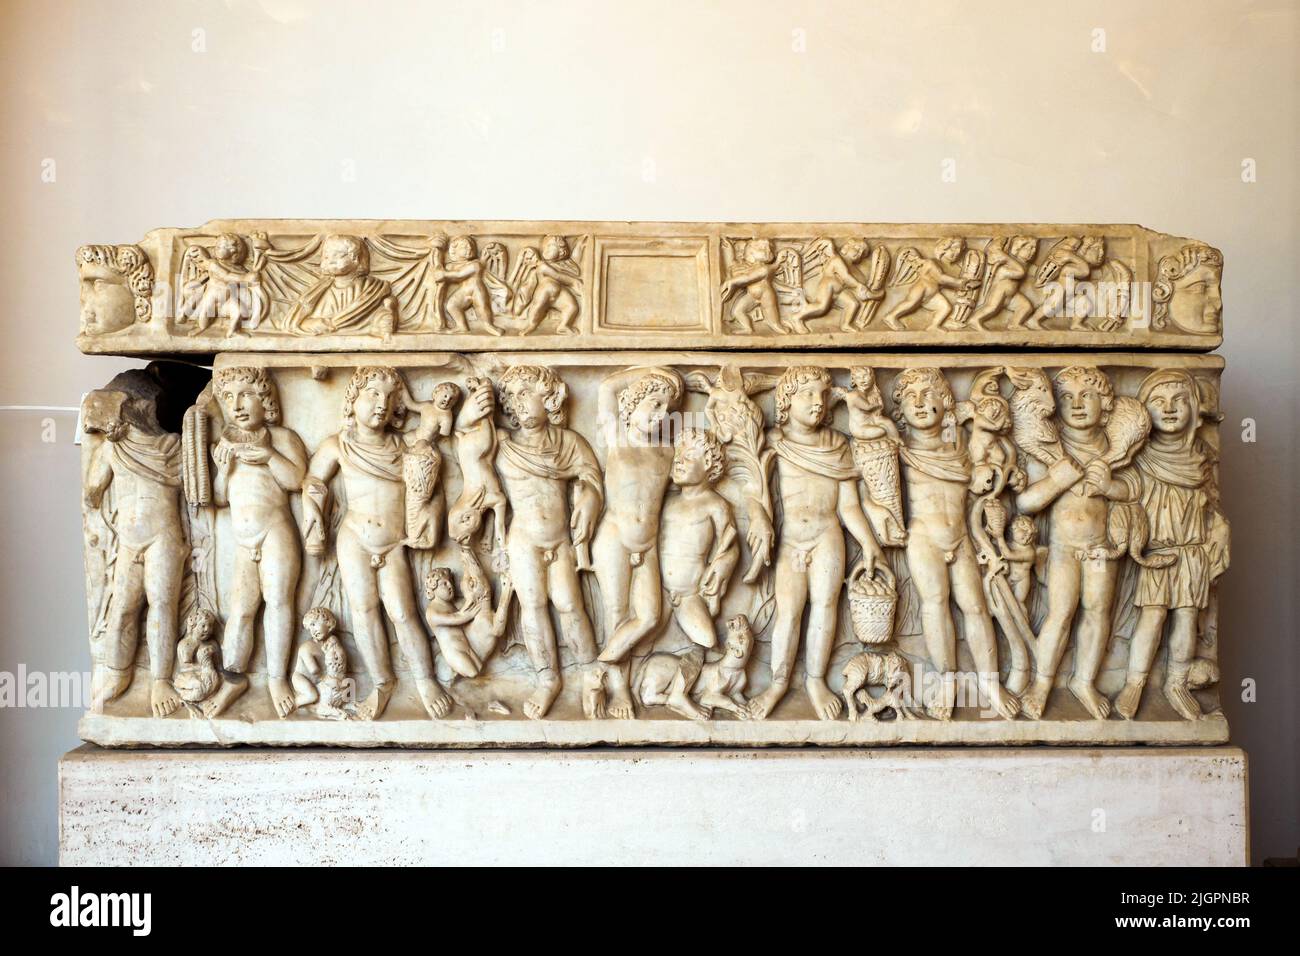 Sarkophag, der den betrunkenen Dionysos darstellt, der von einem Satyr und den Jahreszeiten hochgehalten wird. Luni-Marmor. Erste Jahrzehnte des 4.. Jahrhunderts n. Chr. - Unbekannte Herkunft - Nationales Römisches Museum - die Diokletiansthermen - Rom, Italien Stockfoto